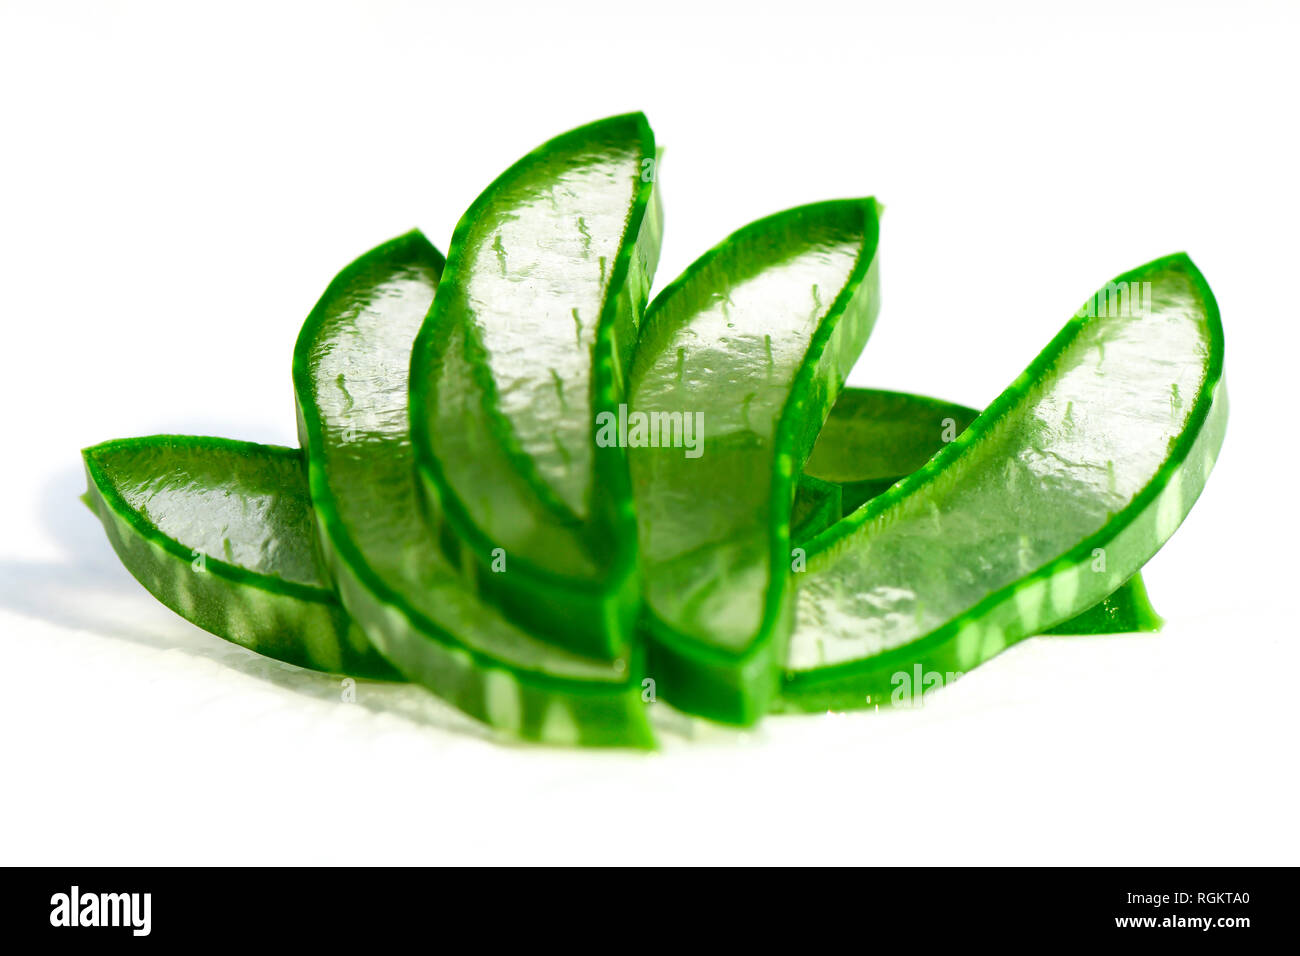 Schneiden Sie Aloe Vera Blätter zeigt transparentes Aloe-Vera-Gel im Inneren. Aloe Vera ist sehr nützlich, Kräutermedizin für Hautpflege und Haarpflege. Stockfoto